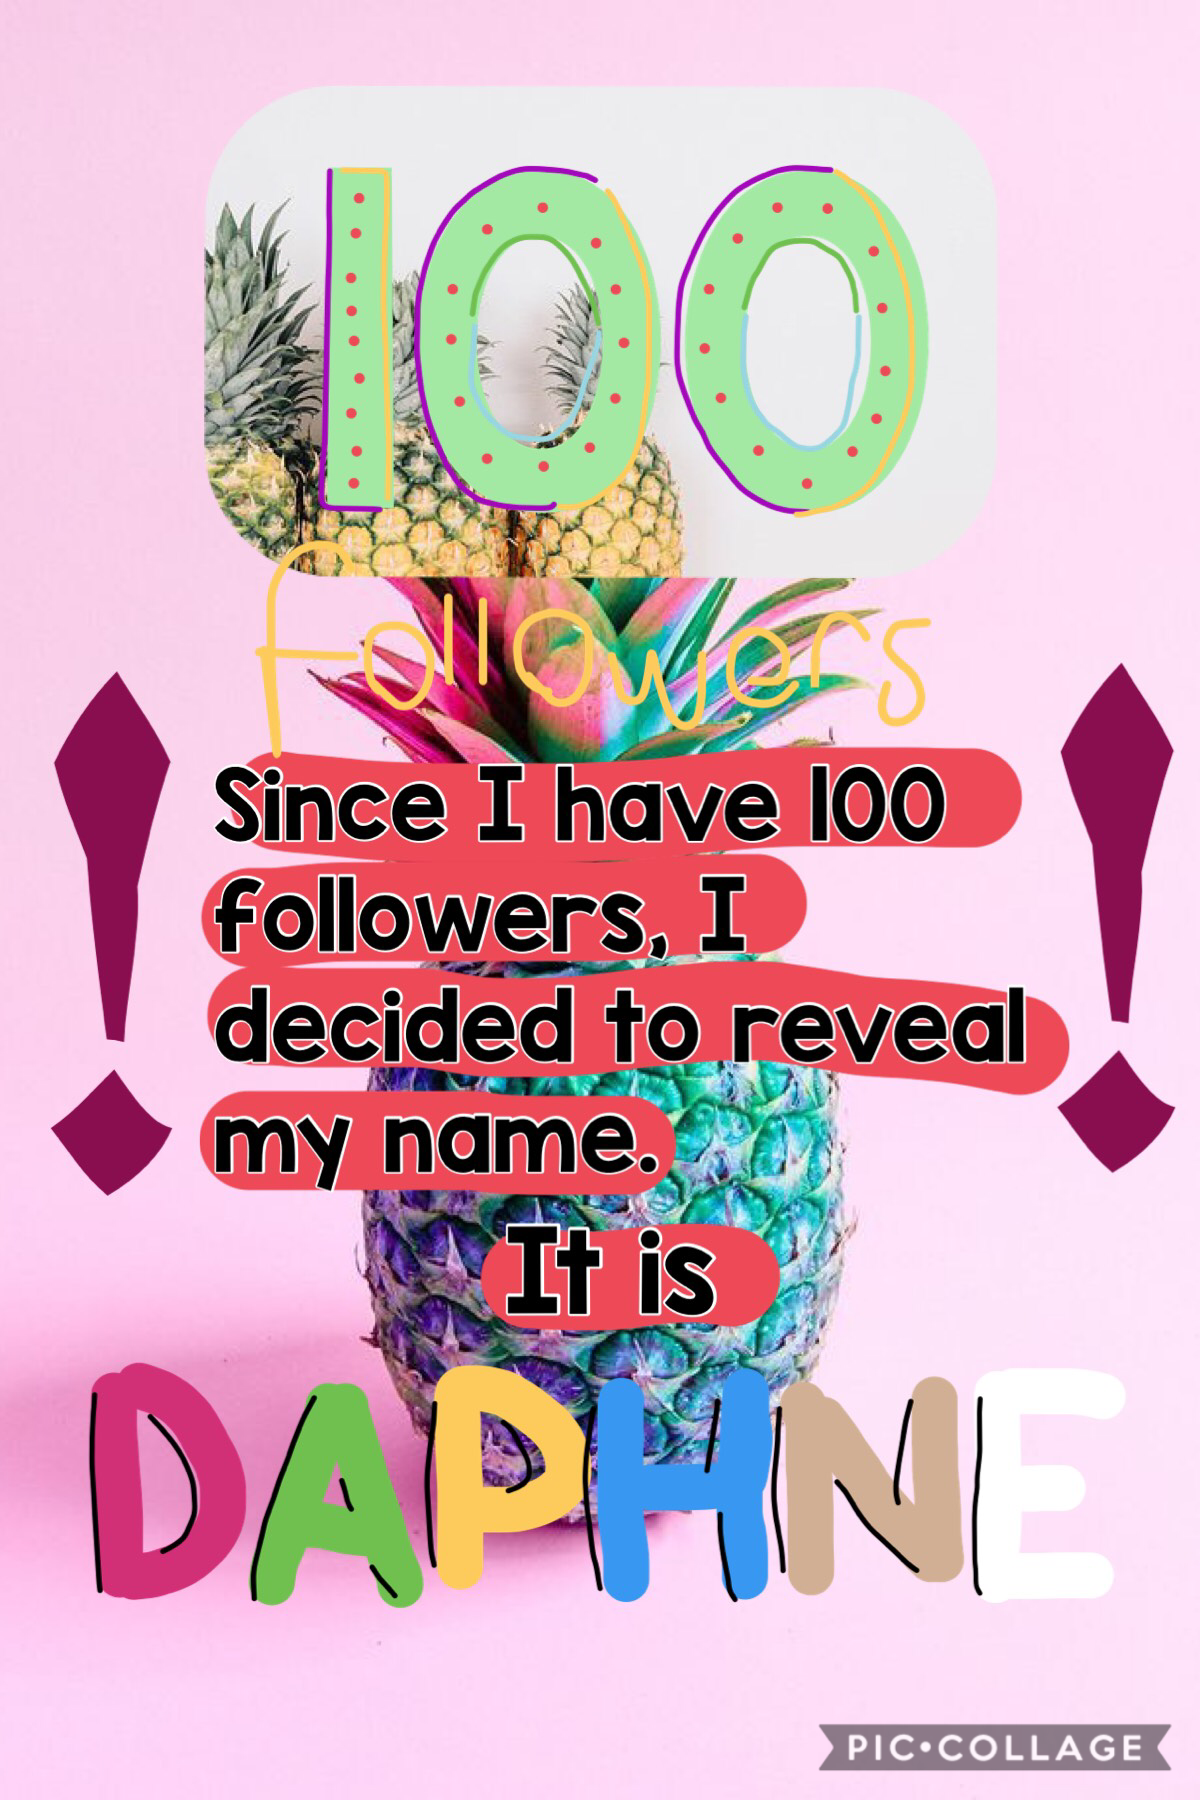 xxx,
         Daphne :)